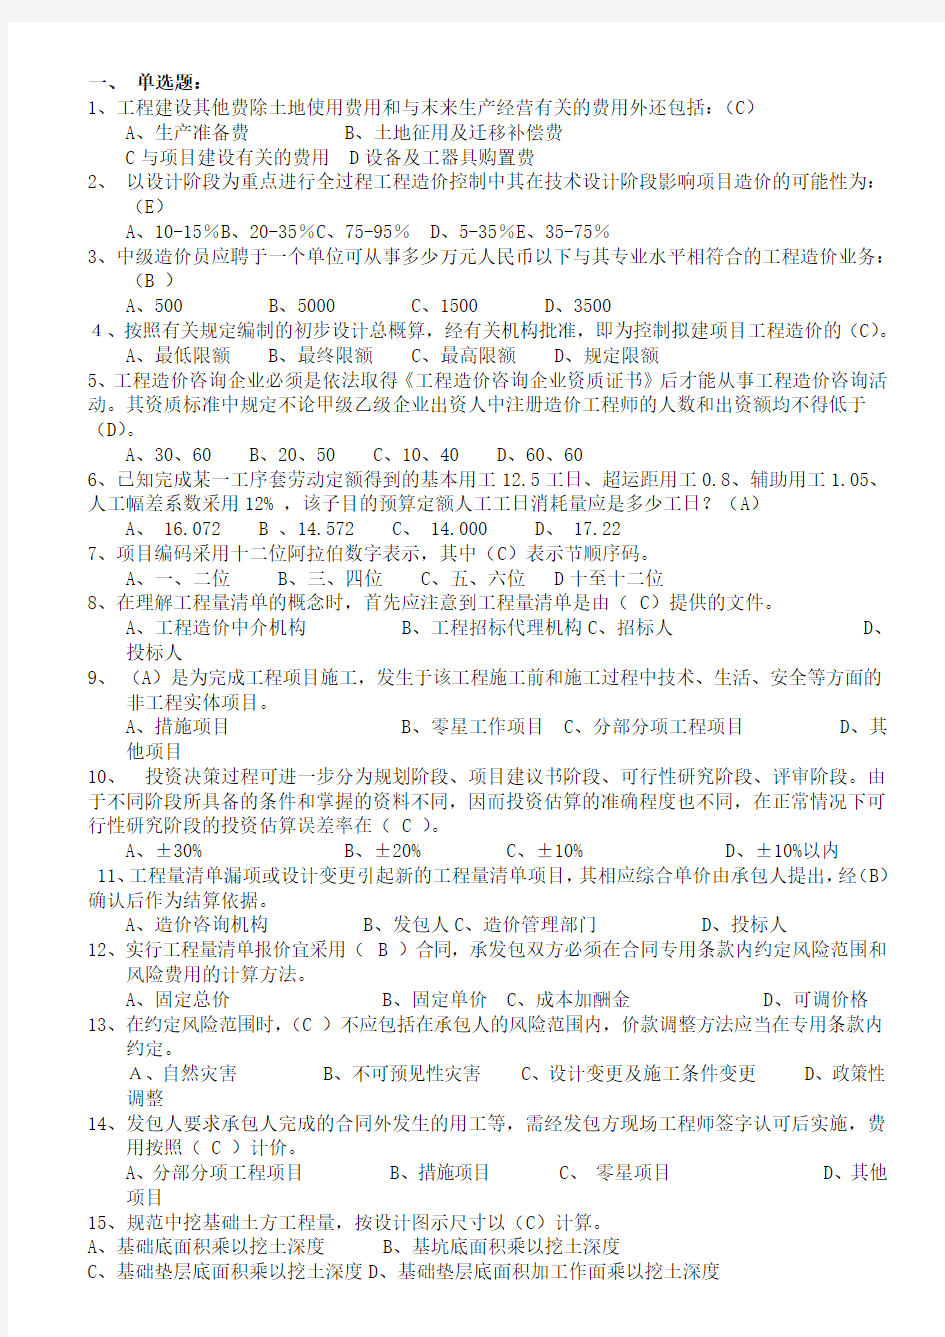 2014年江苏省造价员考试模拟试题(包括理论和案例)